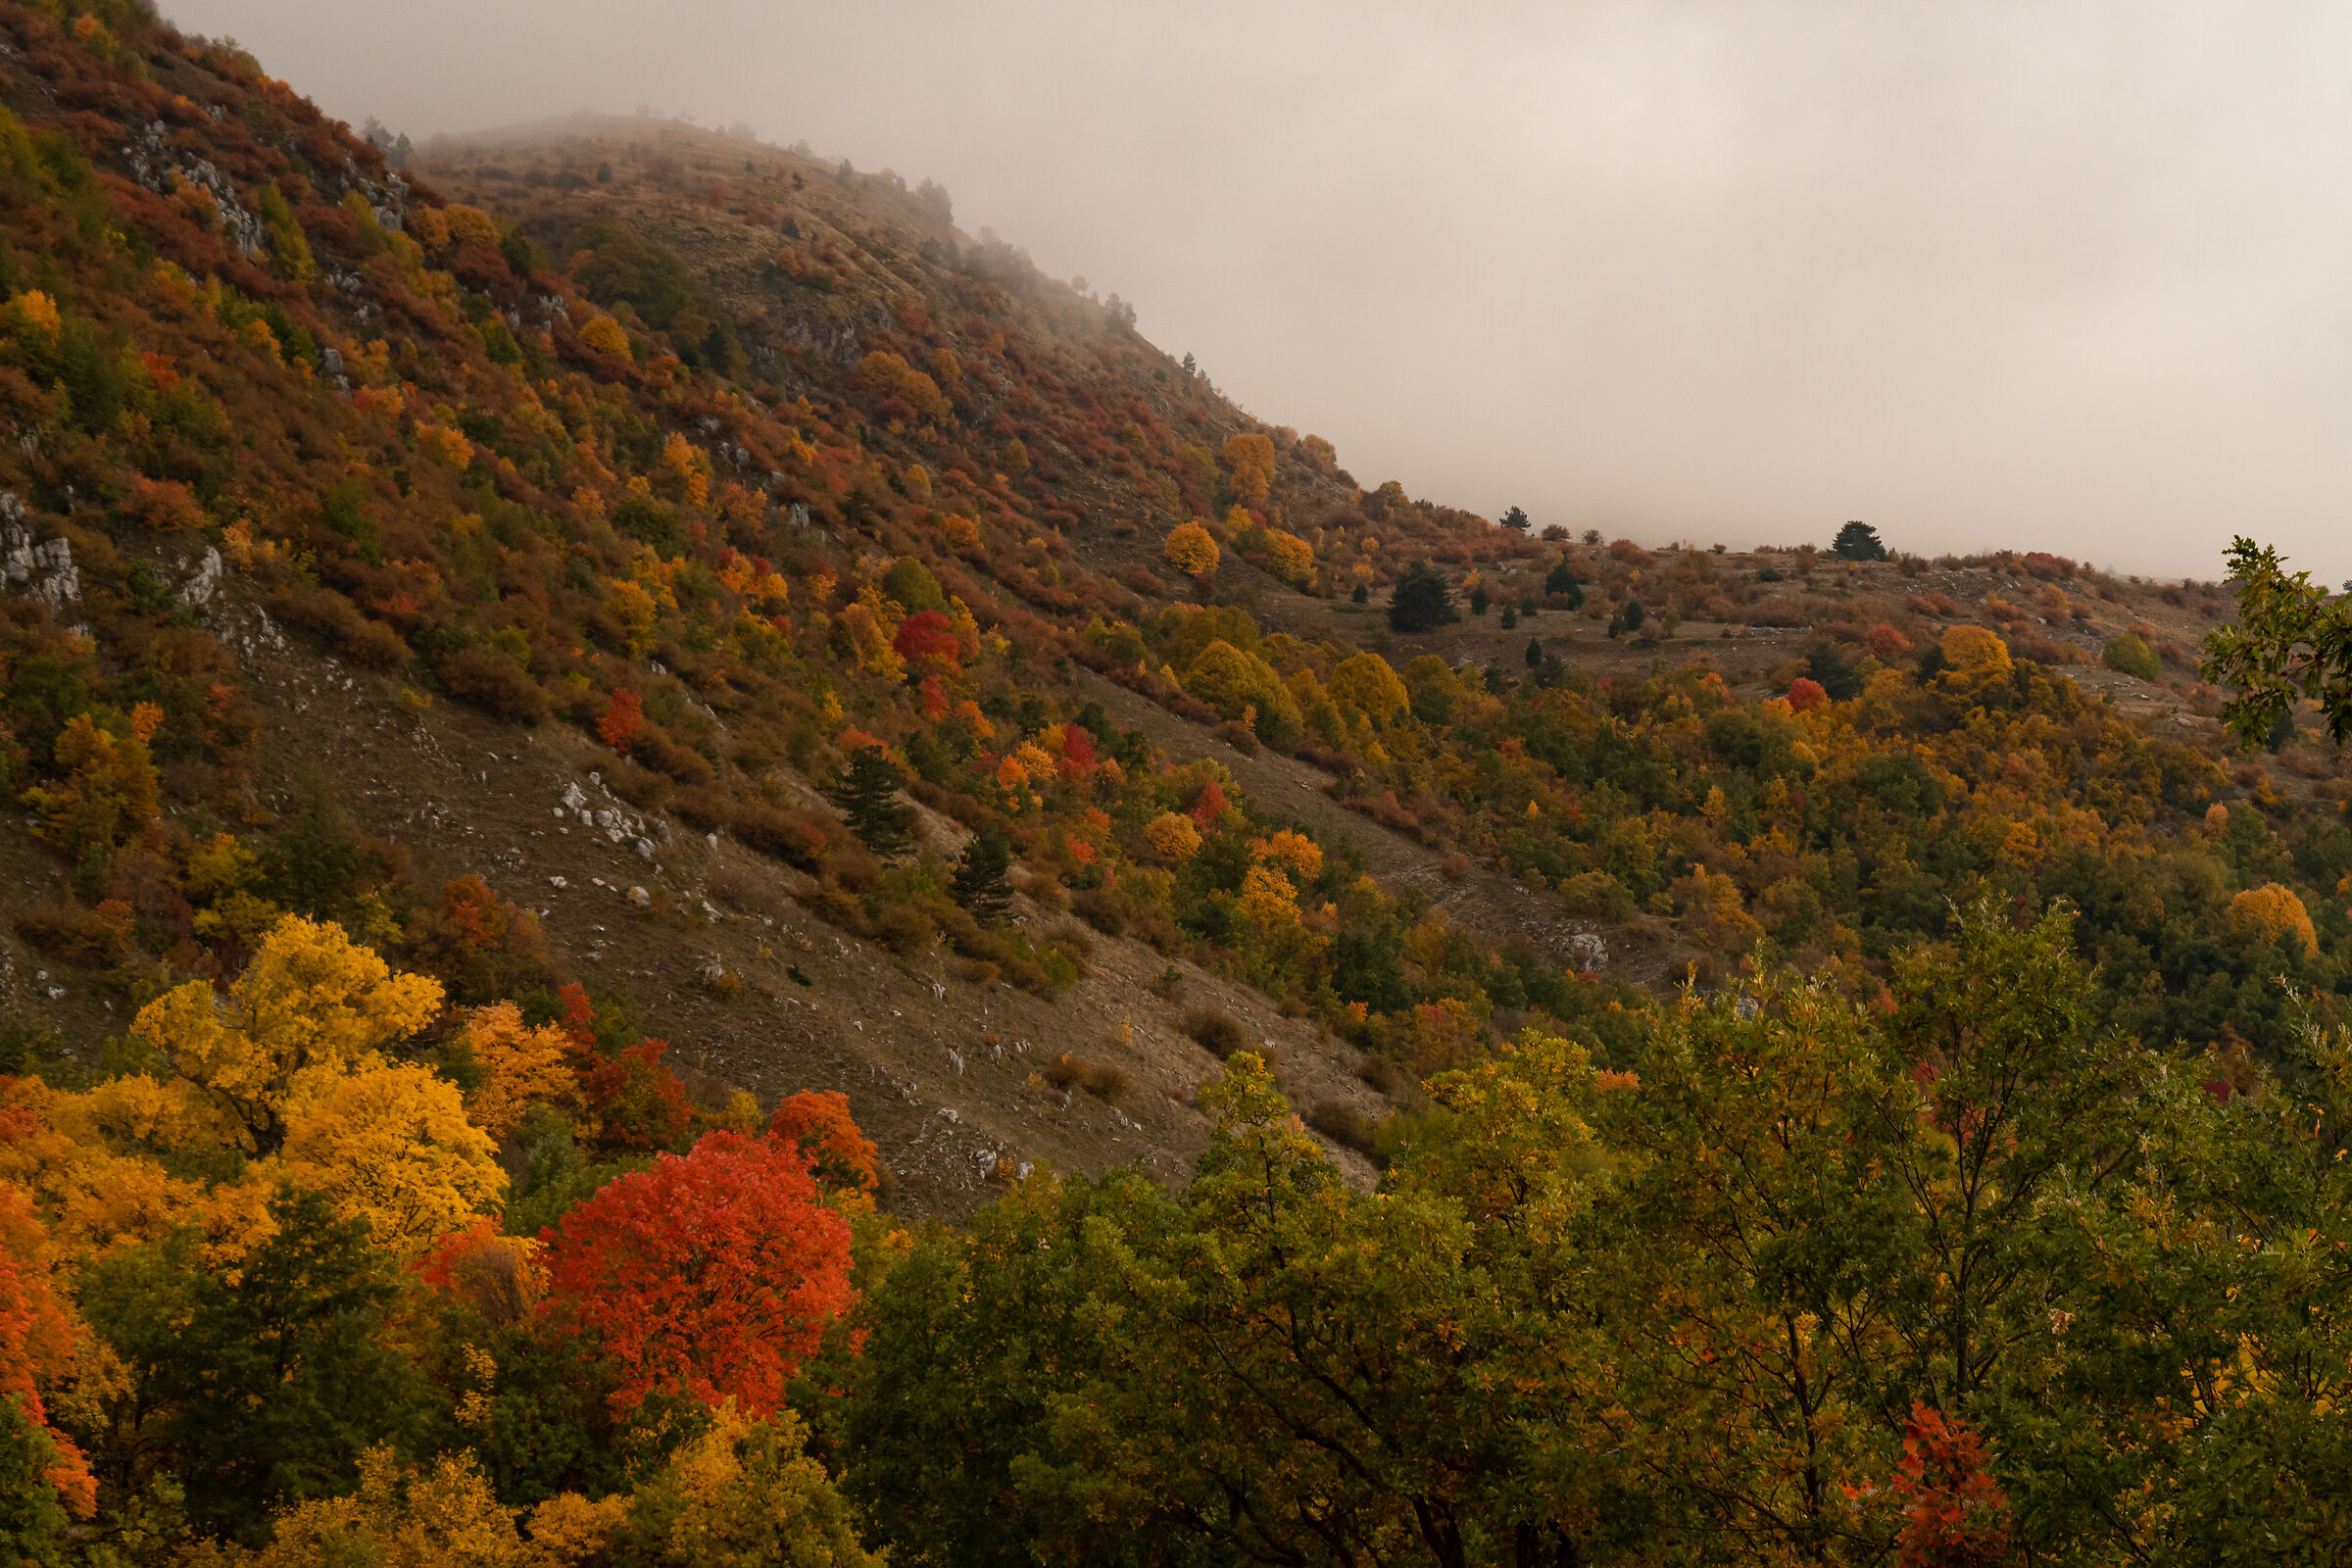 The autumn plateau...